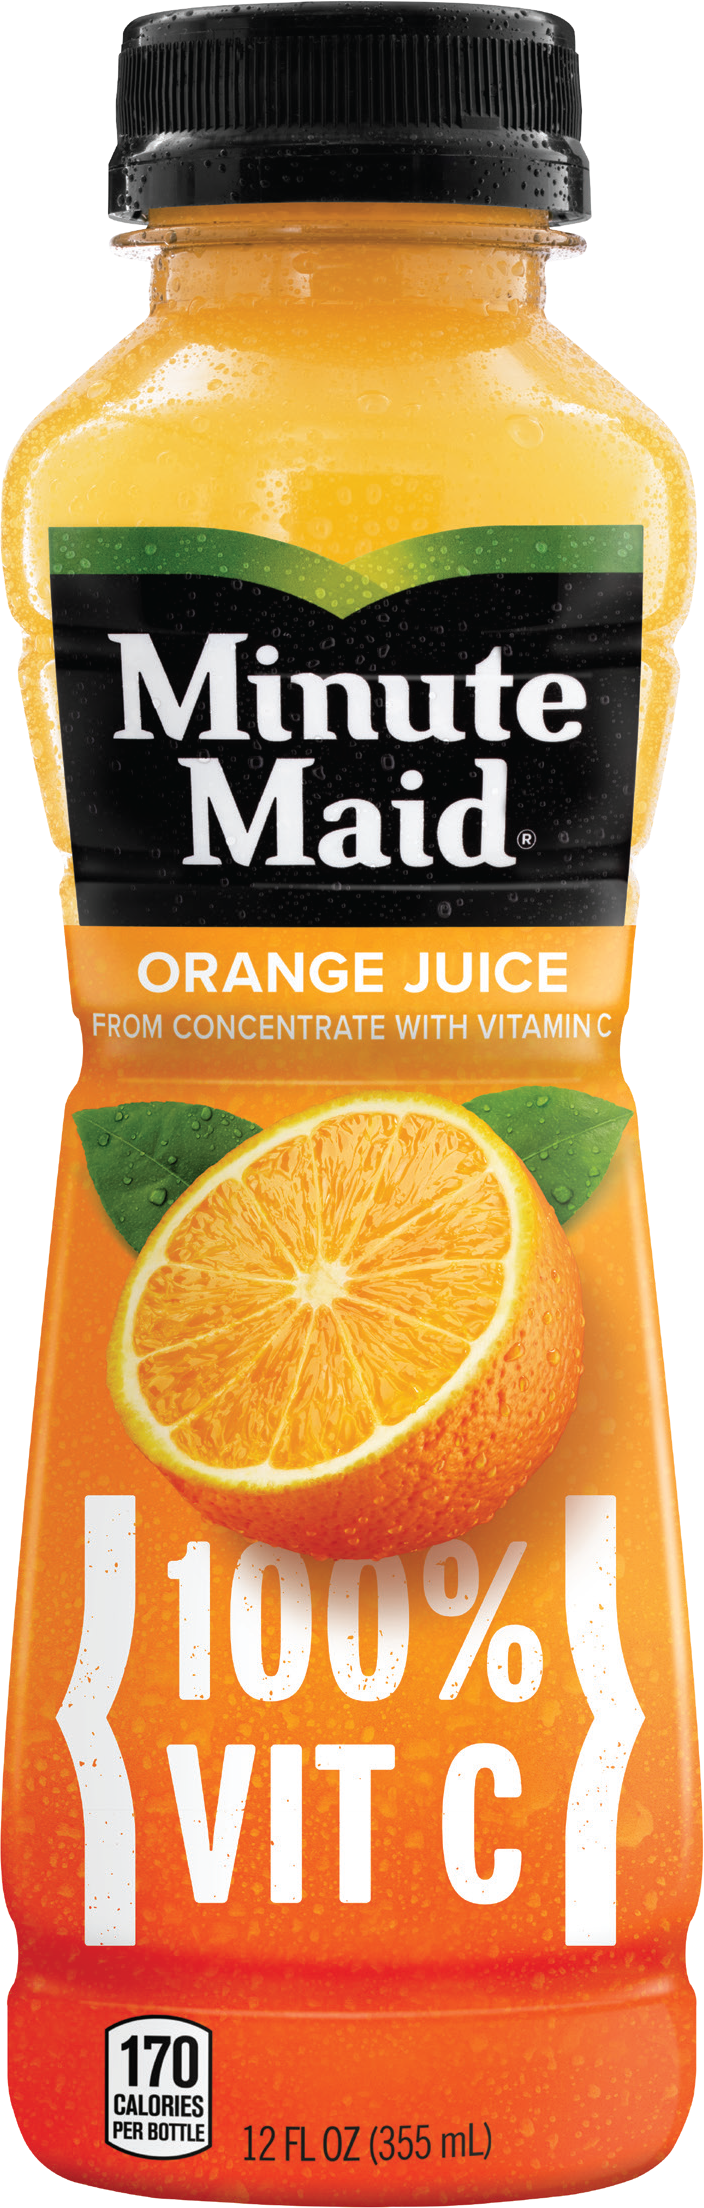 12 oz minute maid orange juice